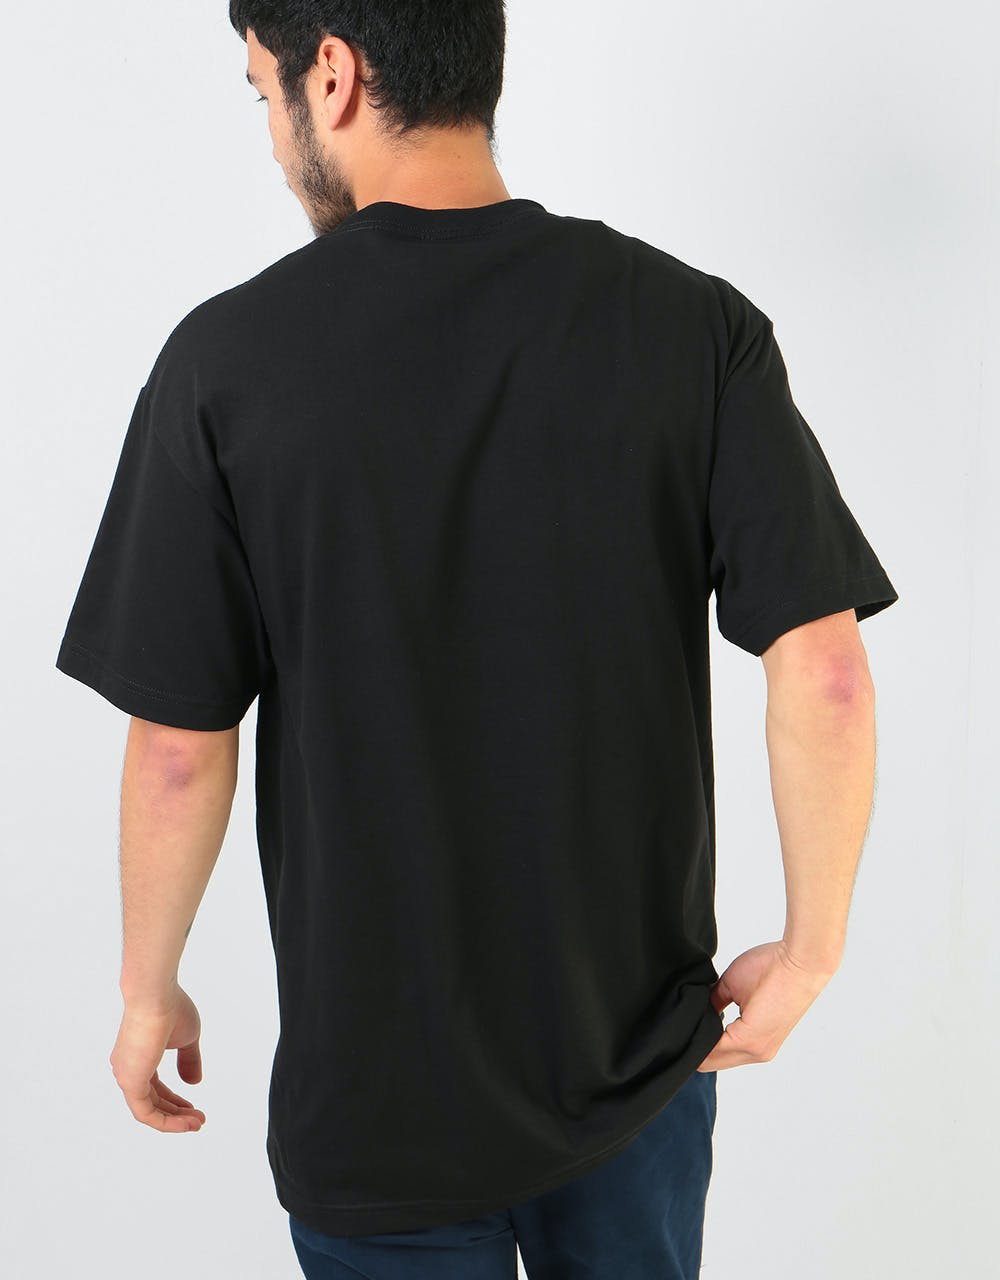 Pass Port World Power T-Shirt - Black